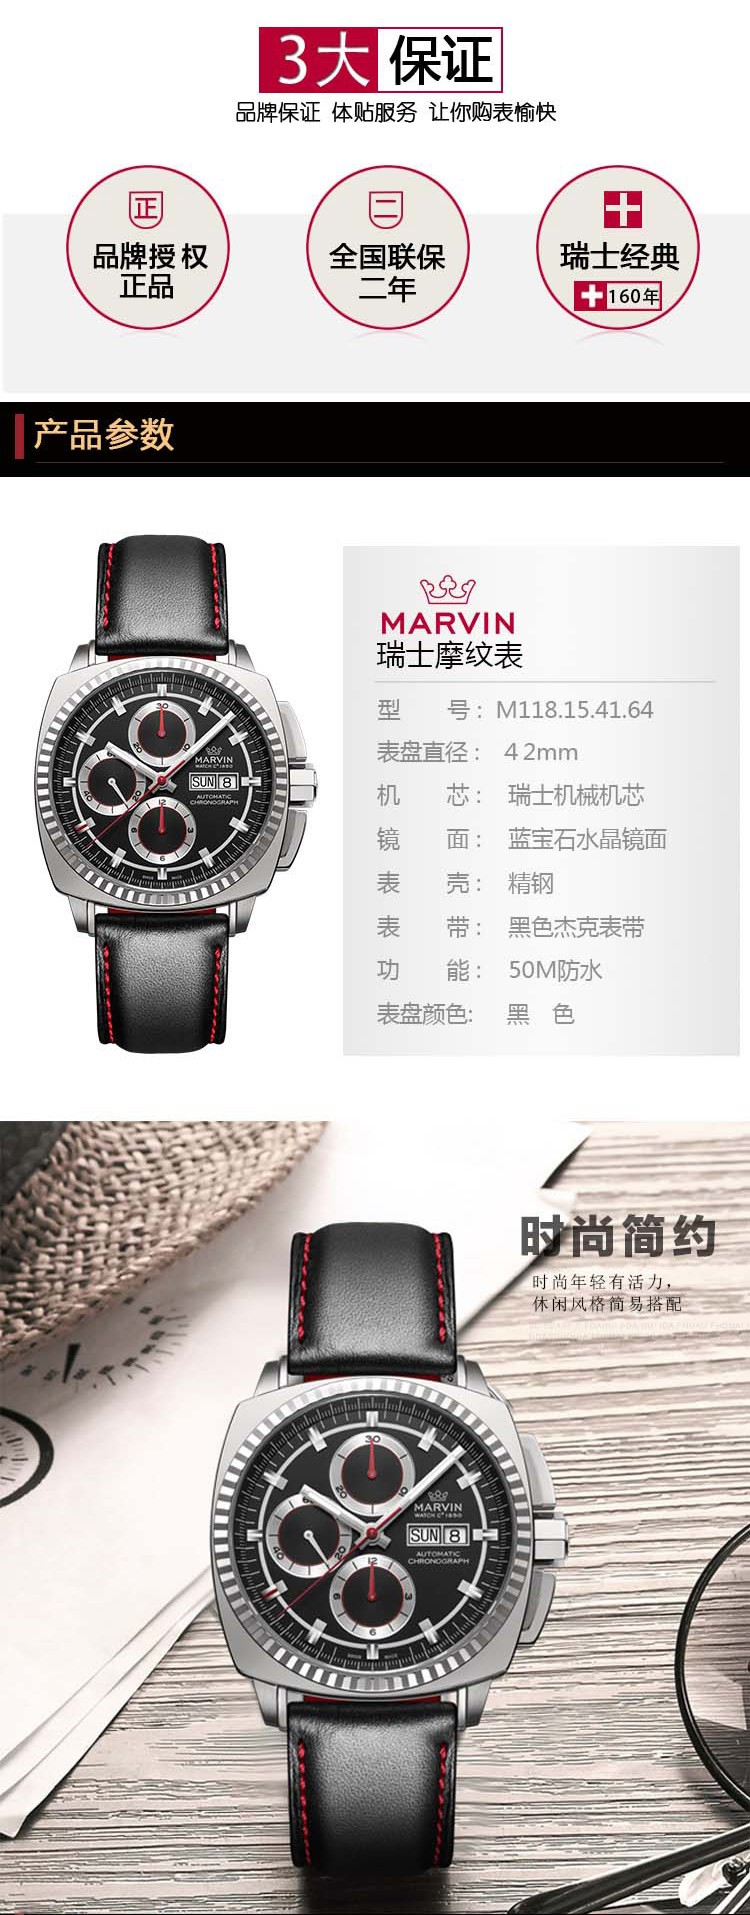 摩纹Marvin-枕形Malton系列 M118.15.41.64 机械男表